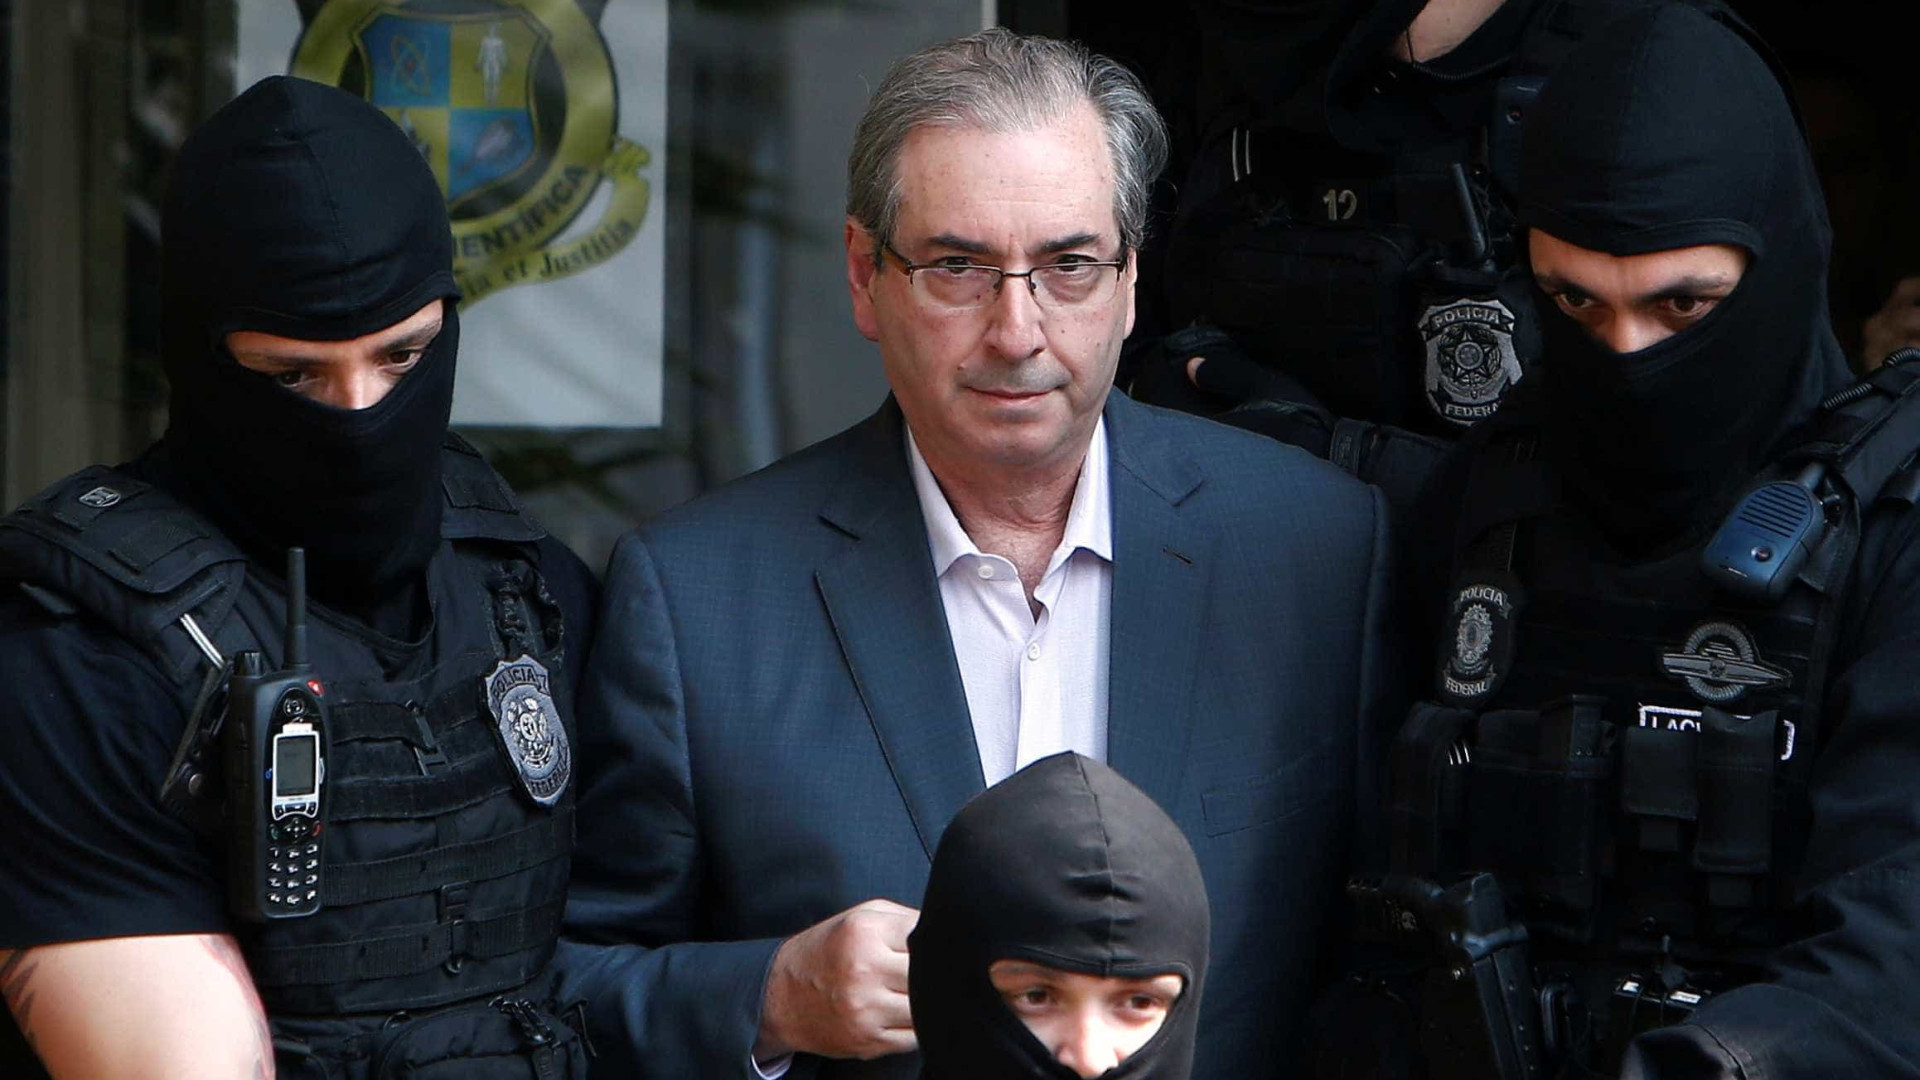 Advogados de Cunha tentam censurar
livro sobre o ex-deputado